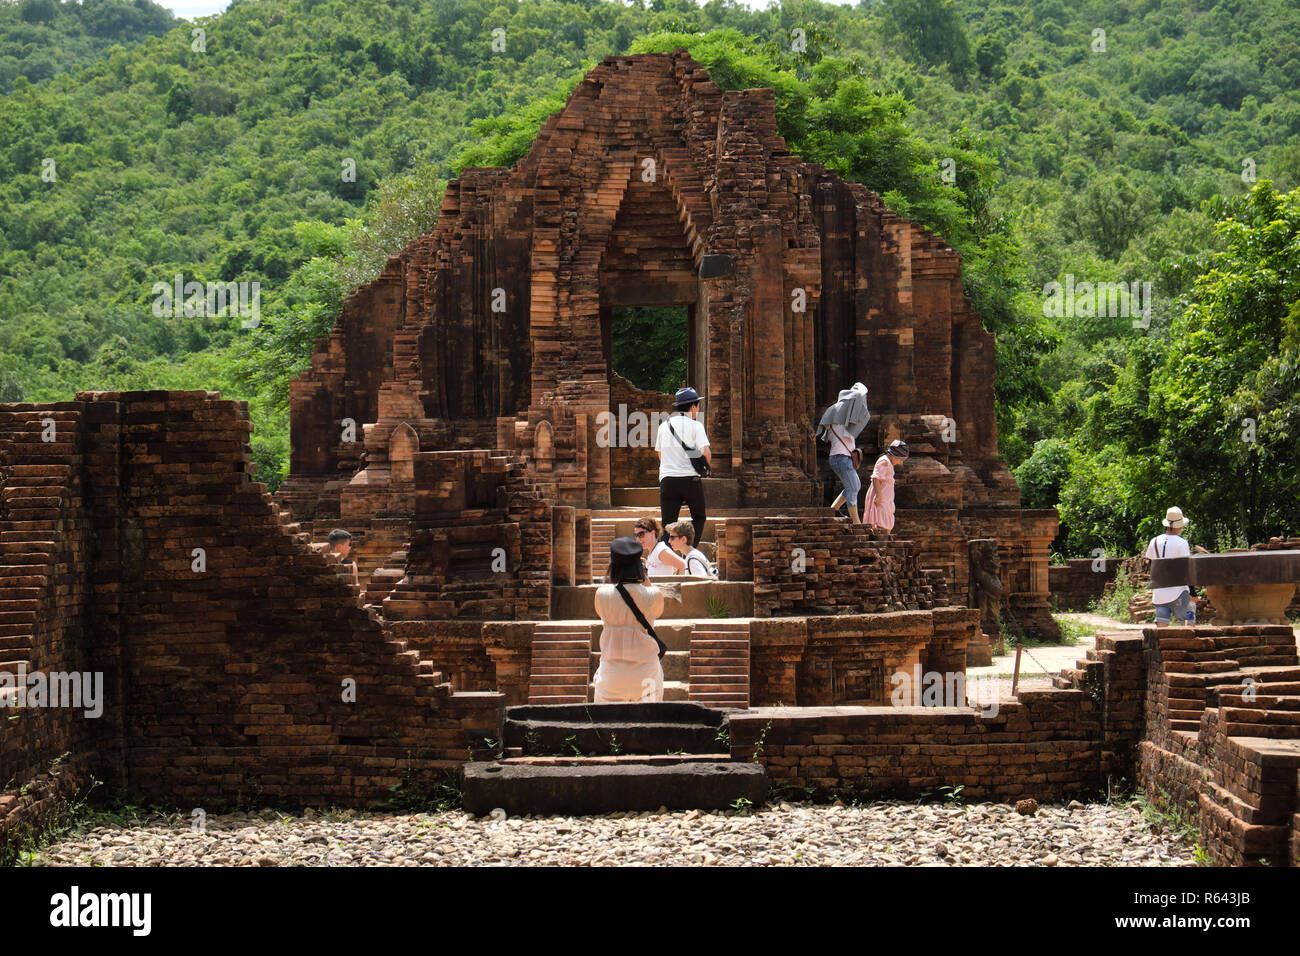 Mein Sohn, Vietnam - Touristen zu Fuß zu den alten hinduistischen Tempel Ruinen der Champa Dynastie um Mein Sohn Vietnam im Jahr 2018 Stockfoto